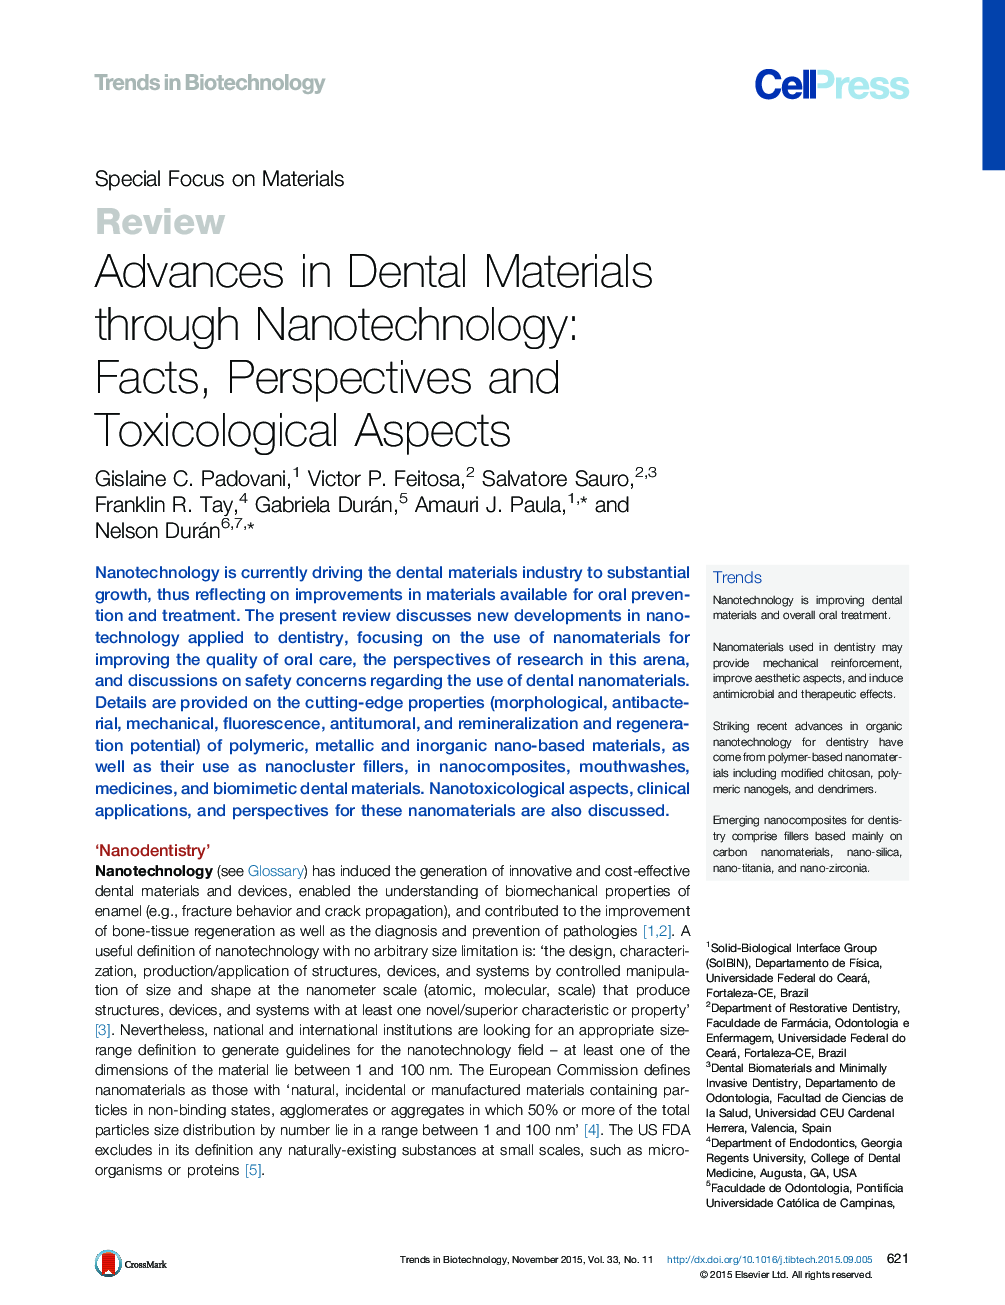 پیشرفت در مواد دندانی از طریق فناوری نانو: آمار، دیدگاه ها و مسائل مربوط به سم شناسی 